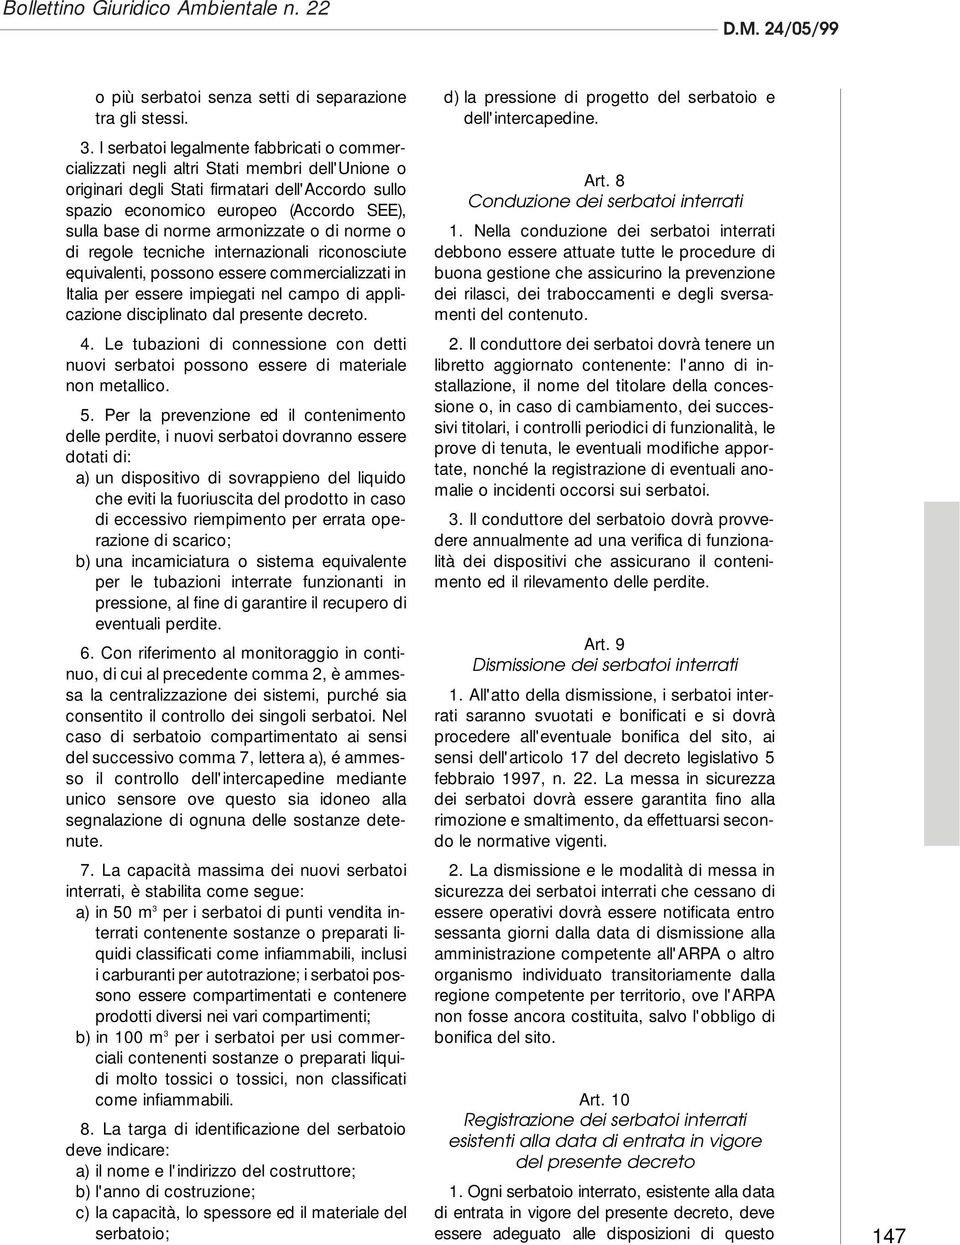 norme armonizzate o di norme o di regole tecniche internazionali riconosciute equivalenti, possono essere commercializzati in Italia per essere impiegati nel campo di applicazione disciplinato dal